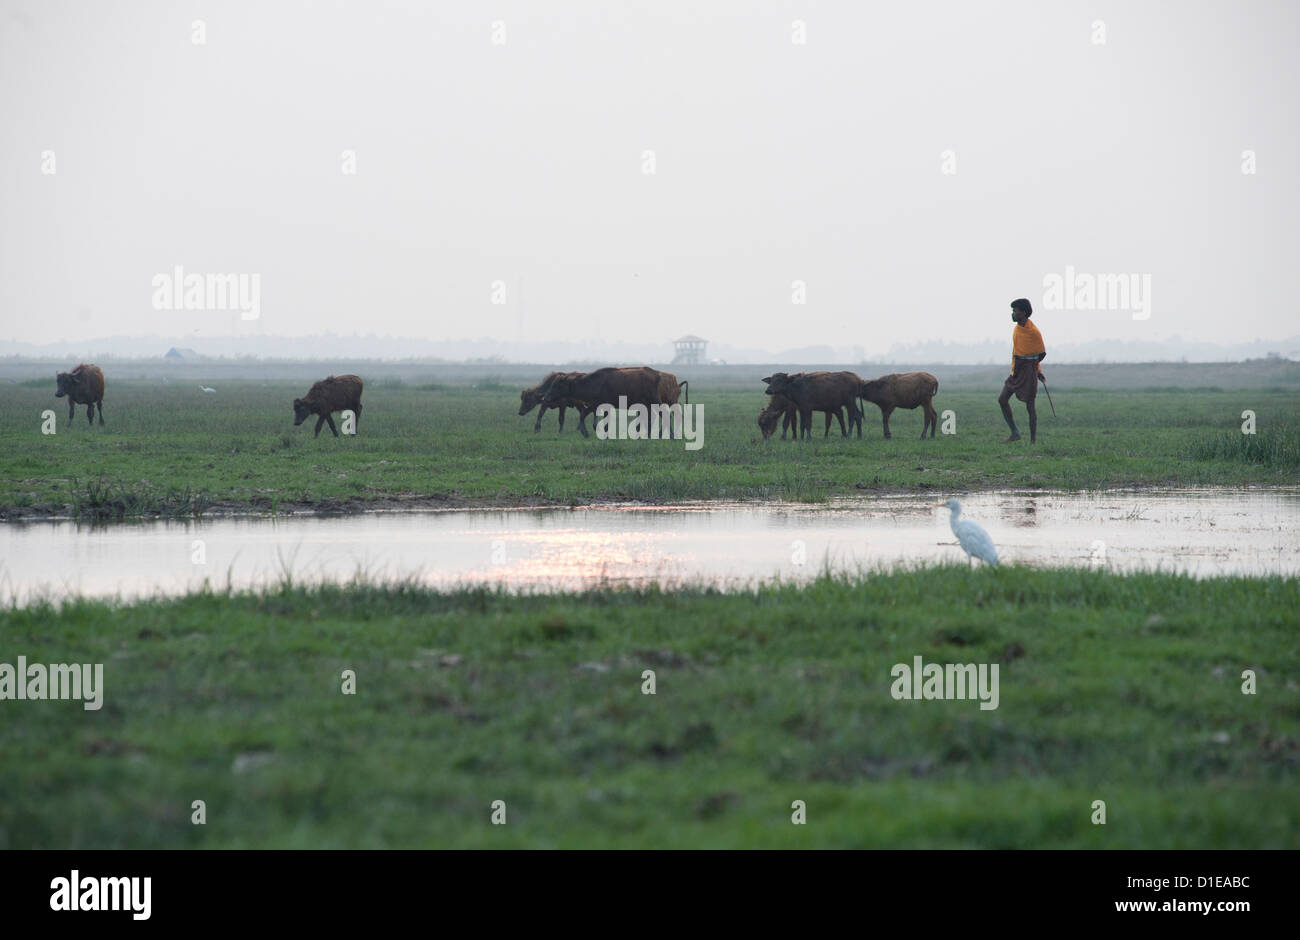 Vaquero traer ganado en al anochecer, ibis blanco en primer plano, humedales alrededor del lago Chilika, Orissa, India, Asia Foto de stock